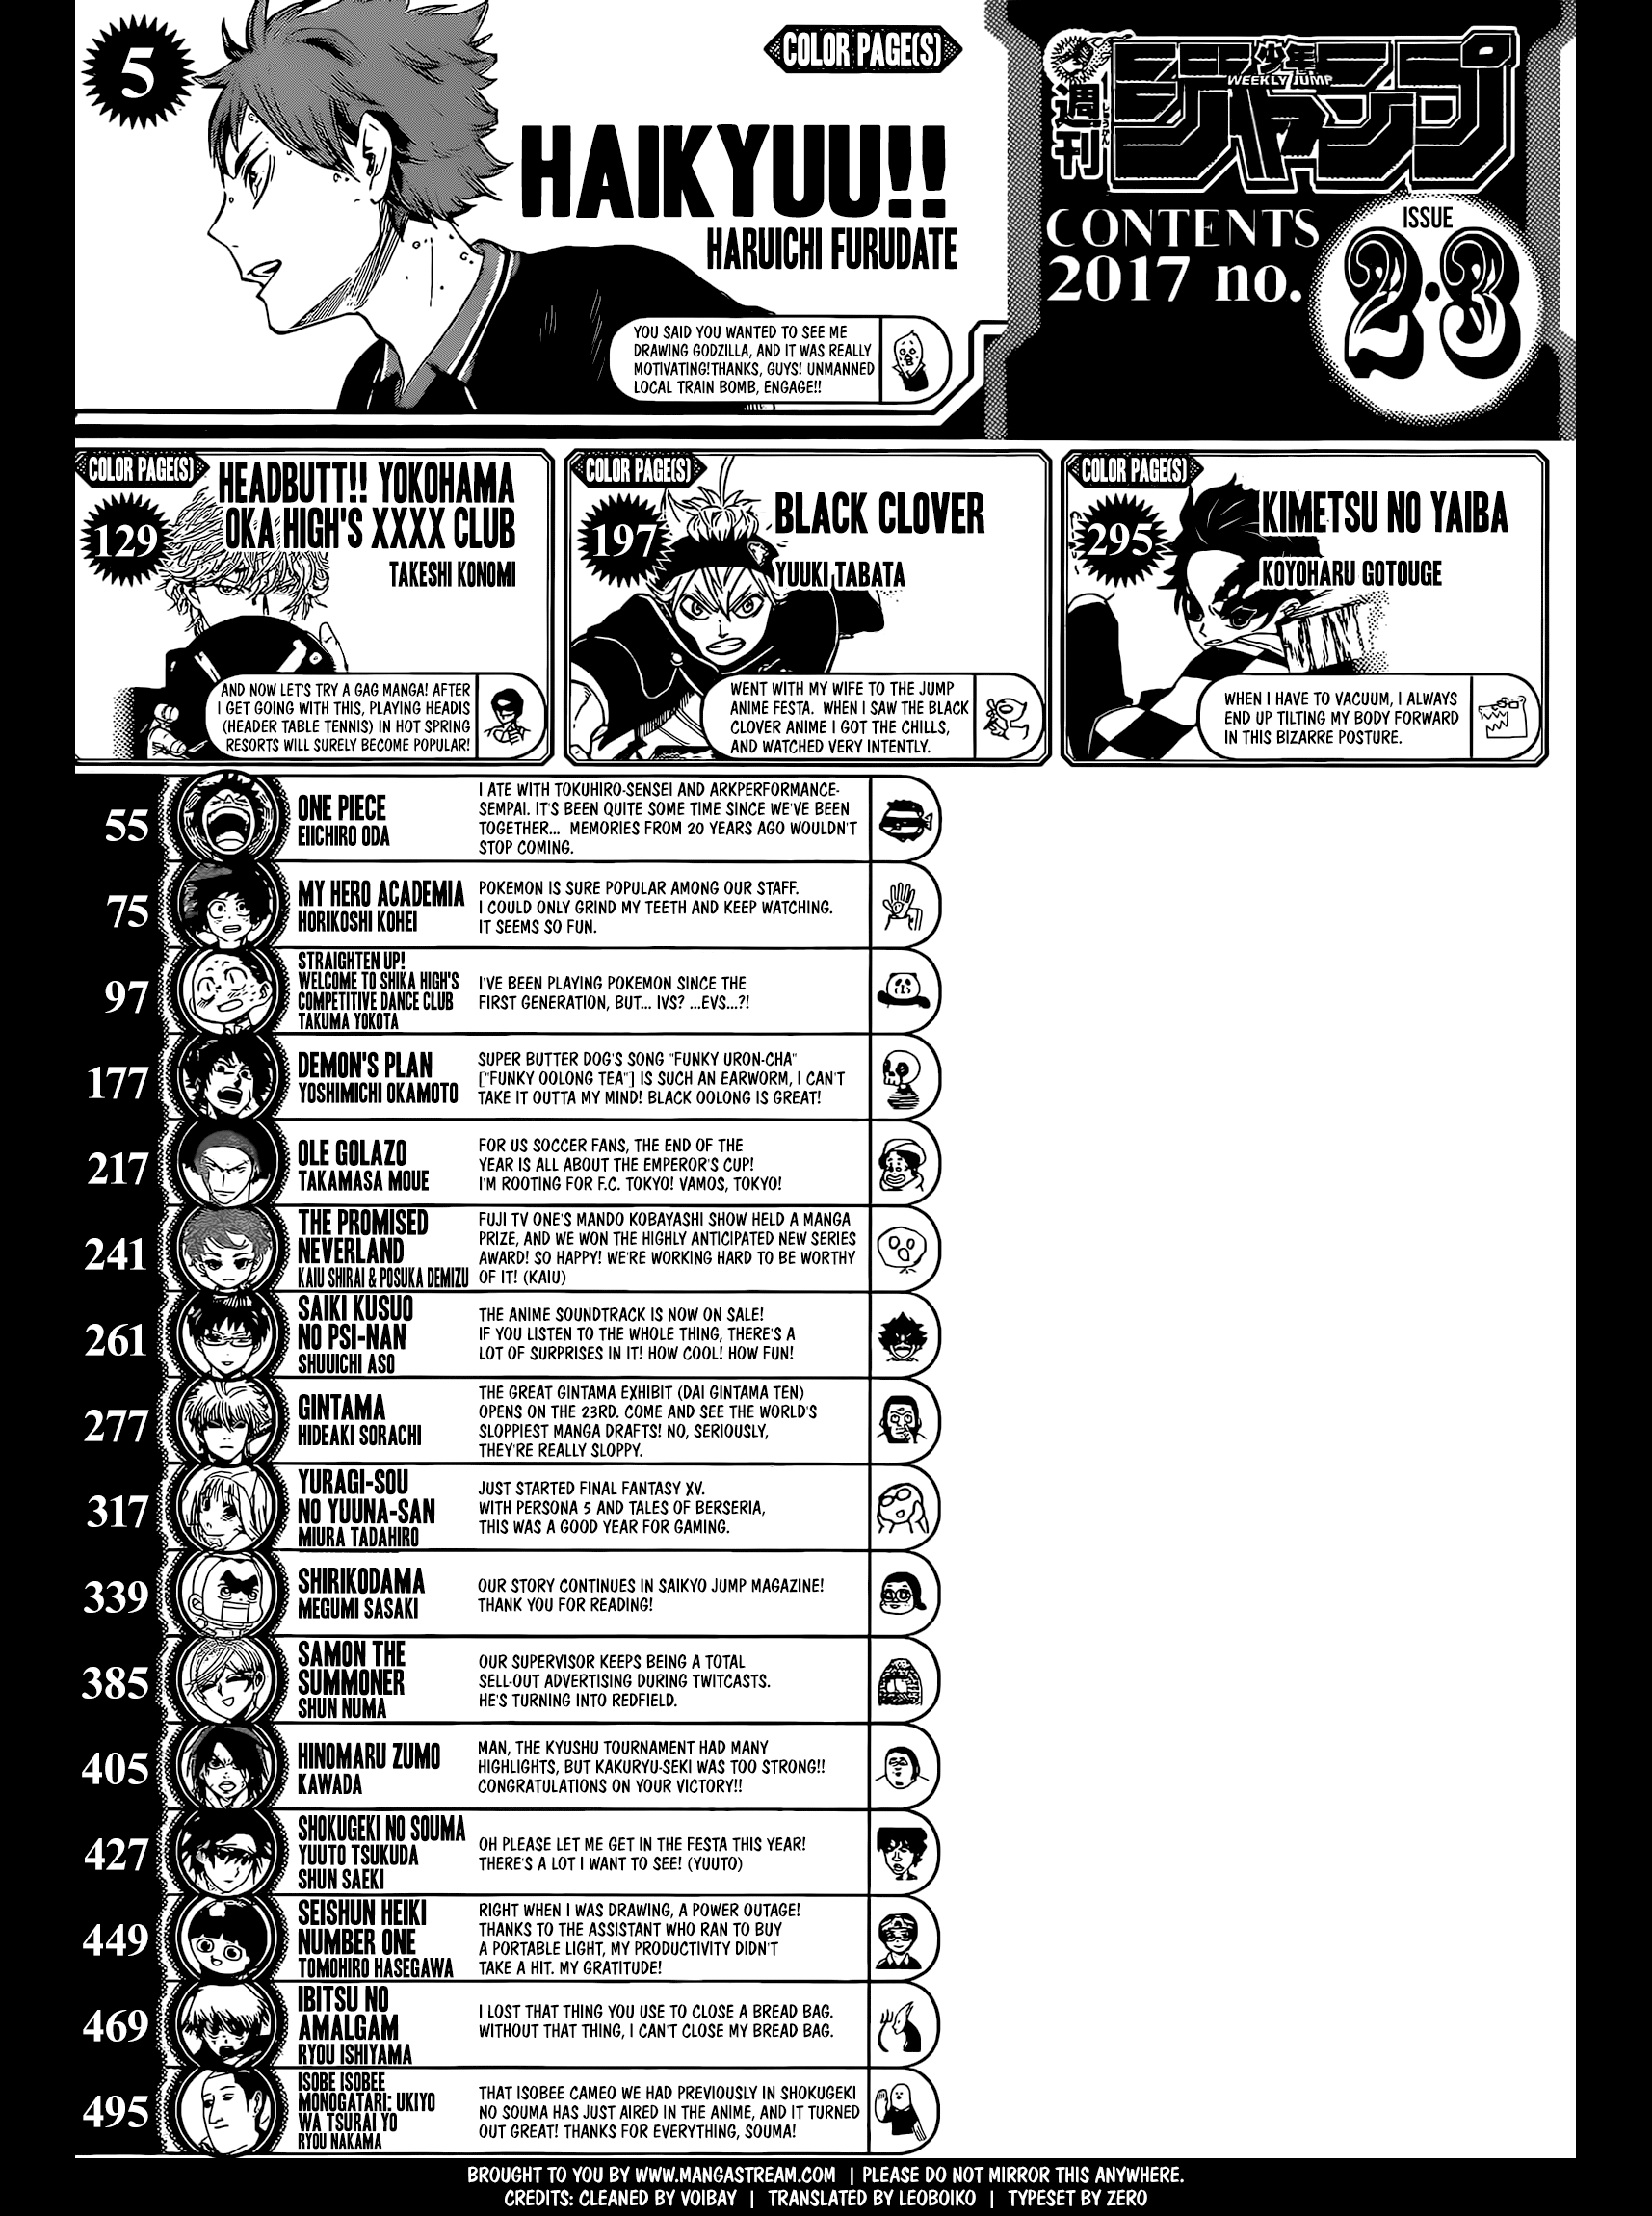 Shonen Jump Volume 2-3 ToC 2017 Comentários Autores